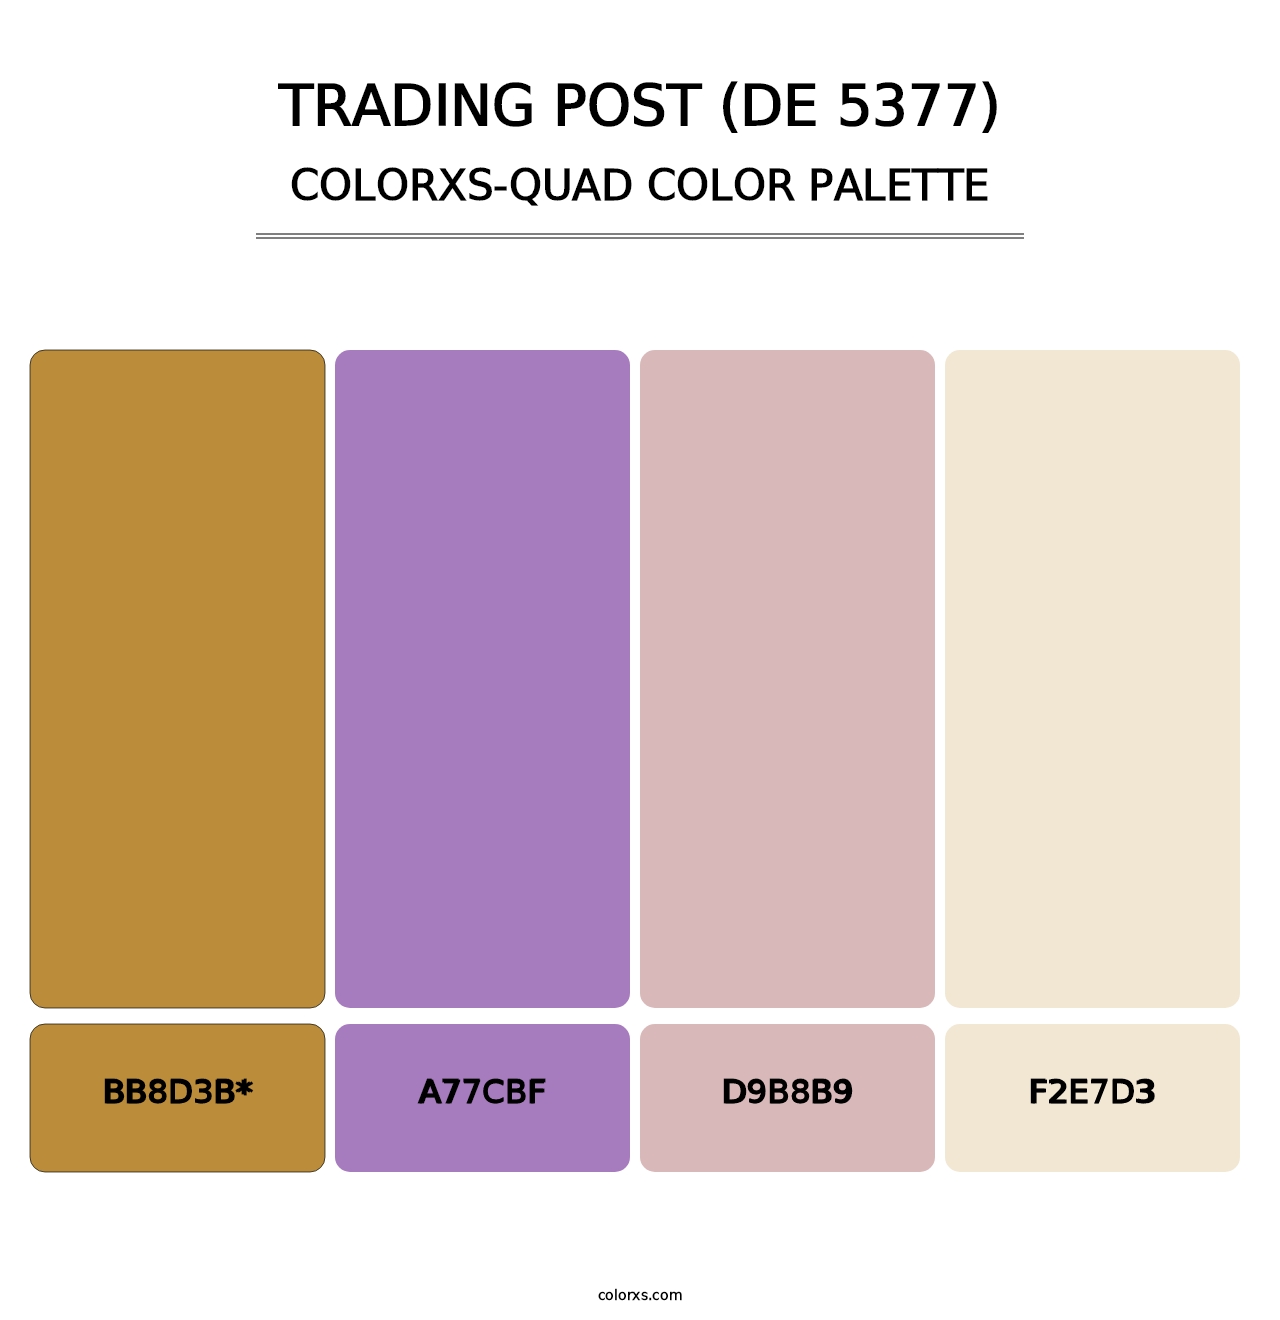 Trading Post (DE 5377) - Colorxs Quad Palette